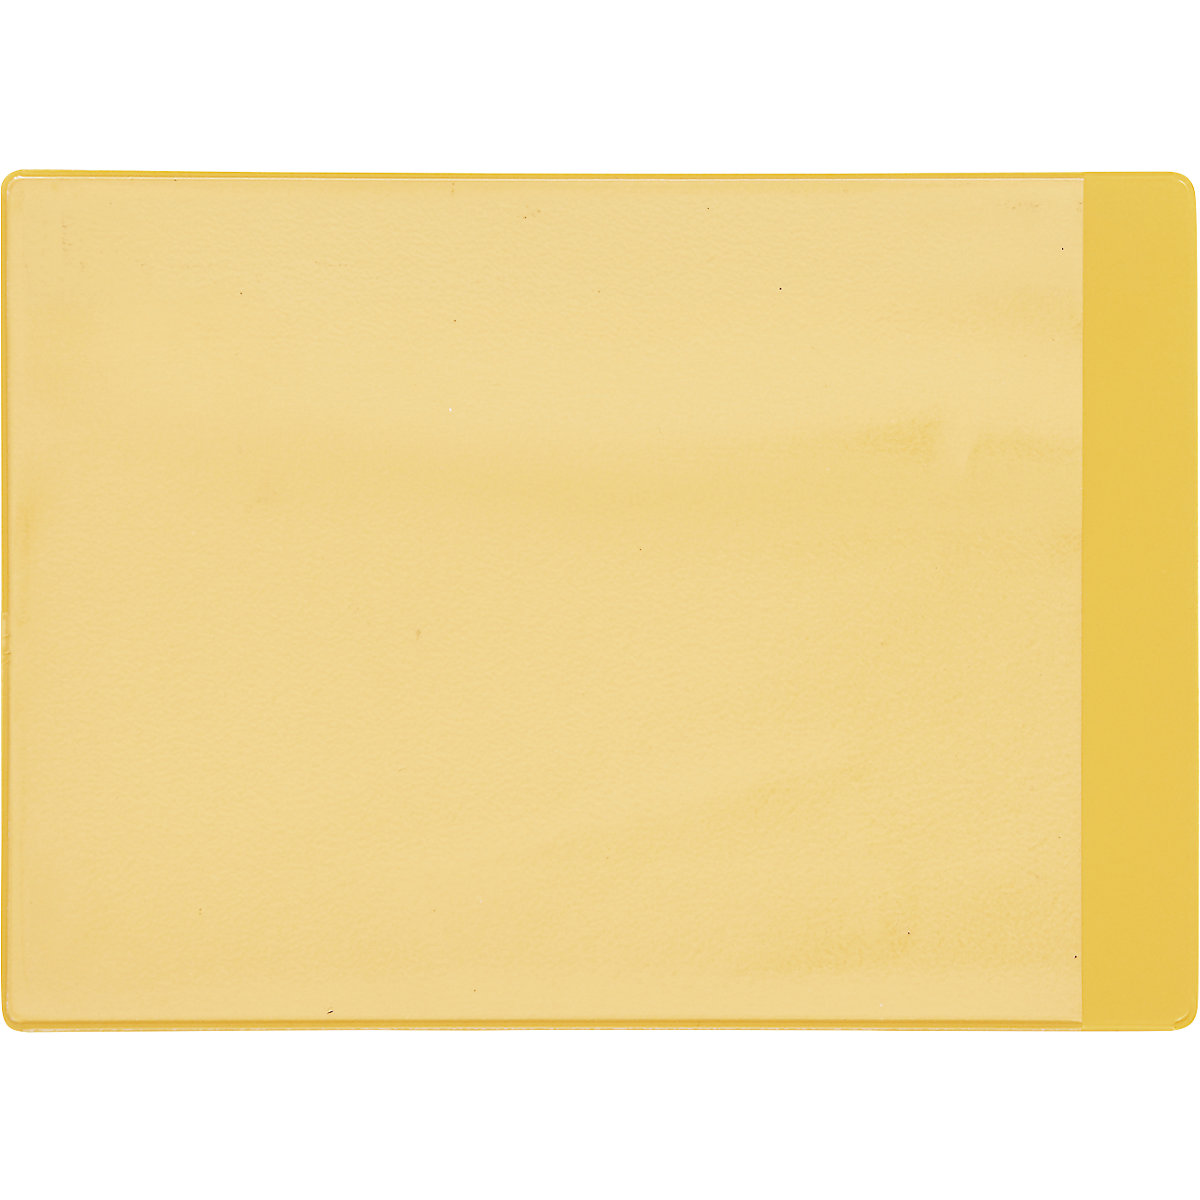 Porte-documents magnétiques, lot de 50, l x h 160 x 115 mm, format A6, jaune